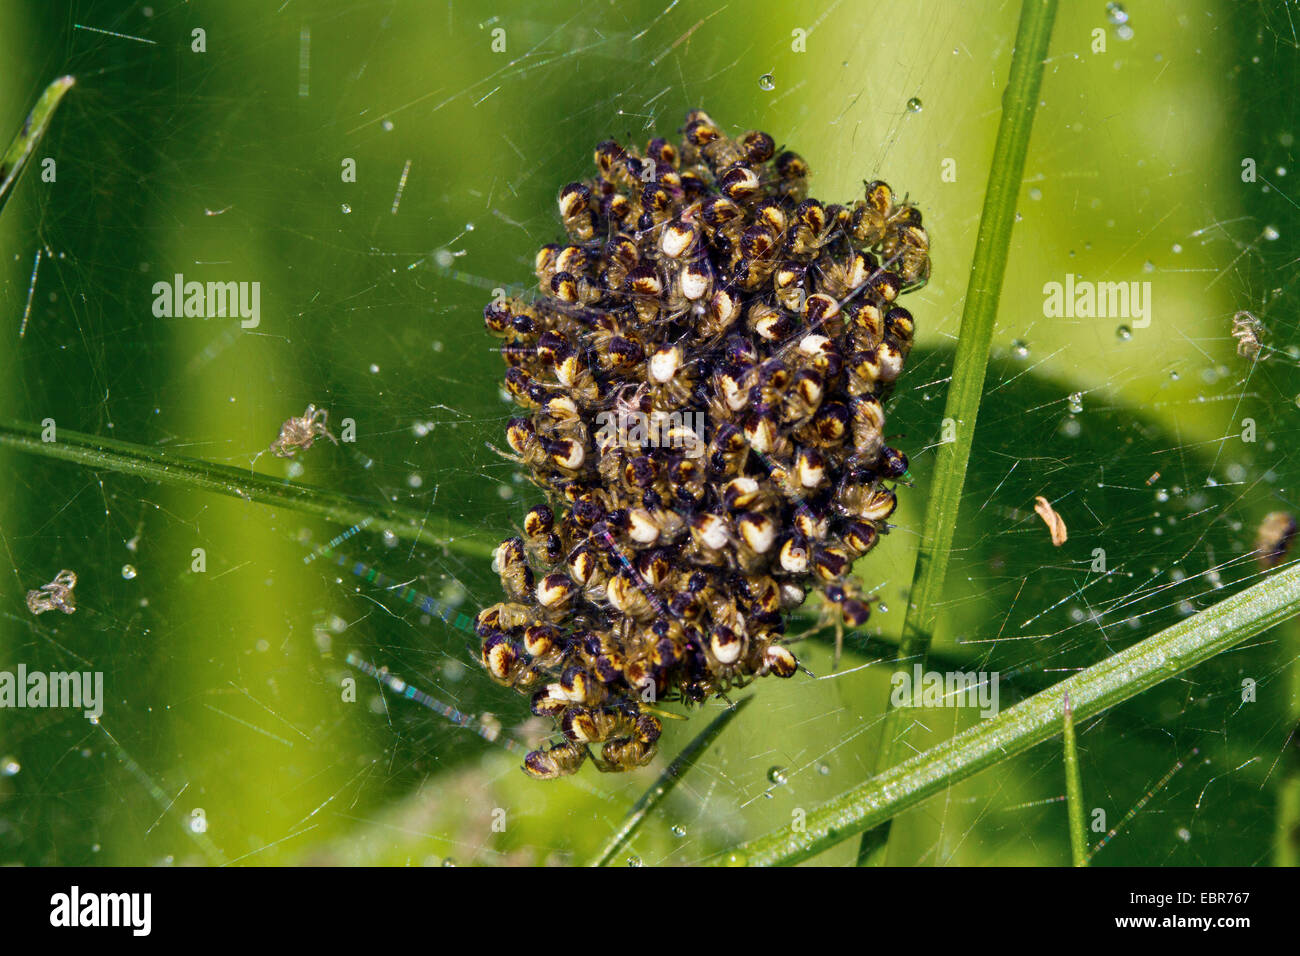 Croce orbweaver, giardino europeo spider, cross spider (Araneus diadematus), molti giovani ragni in un web, Germania Foto Stock